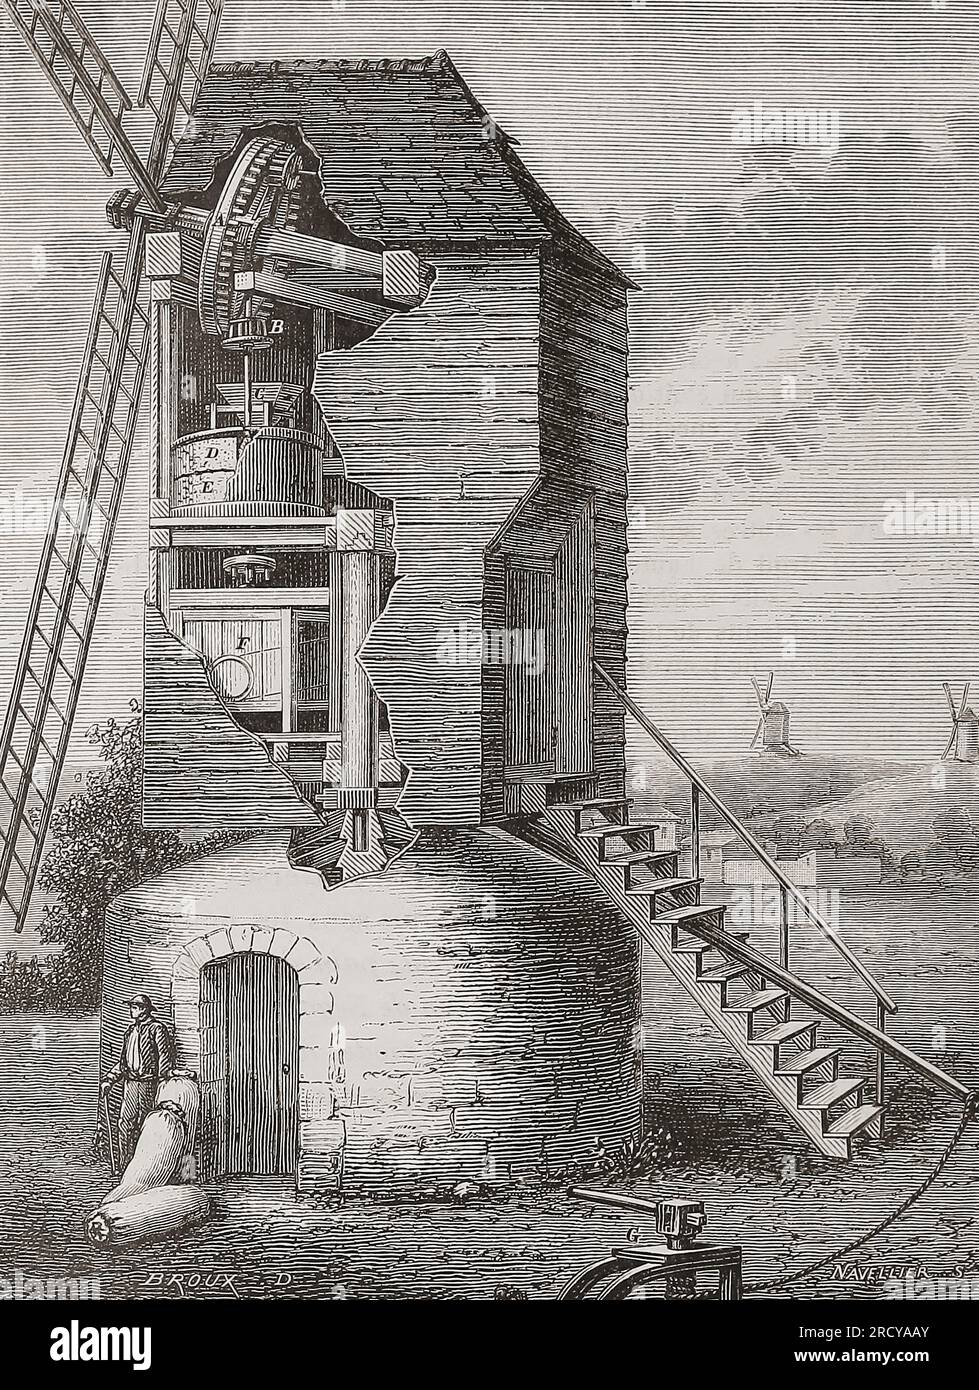 Schnittbild einer Windmühle aus dem 19. Jahrhundert mit den Maschinen zum Mahlen von Getreide. Nach einer Illustration in Les merveilles de l'Industrie von Louis Figuier, veröffentlicht 1877. Stockfoto